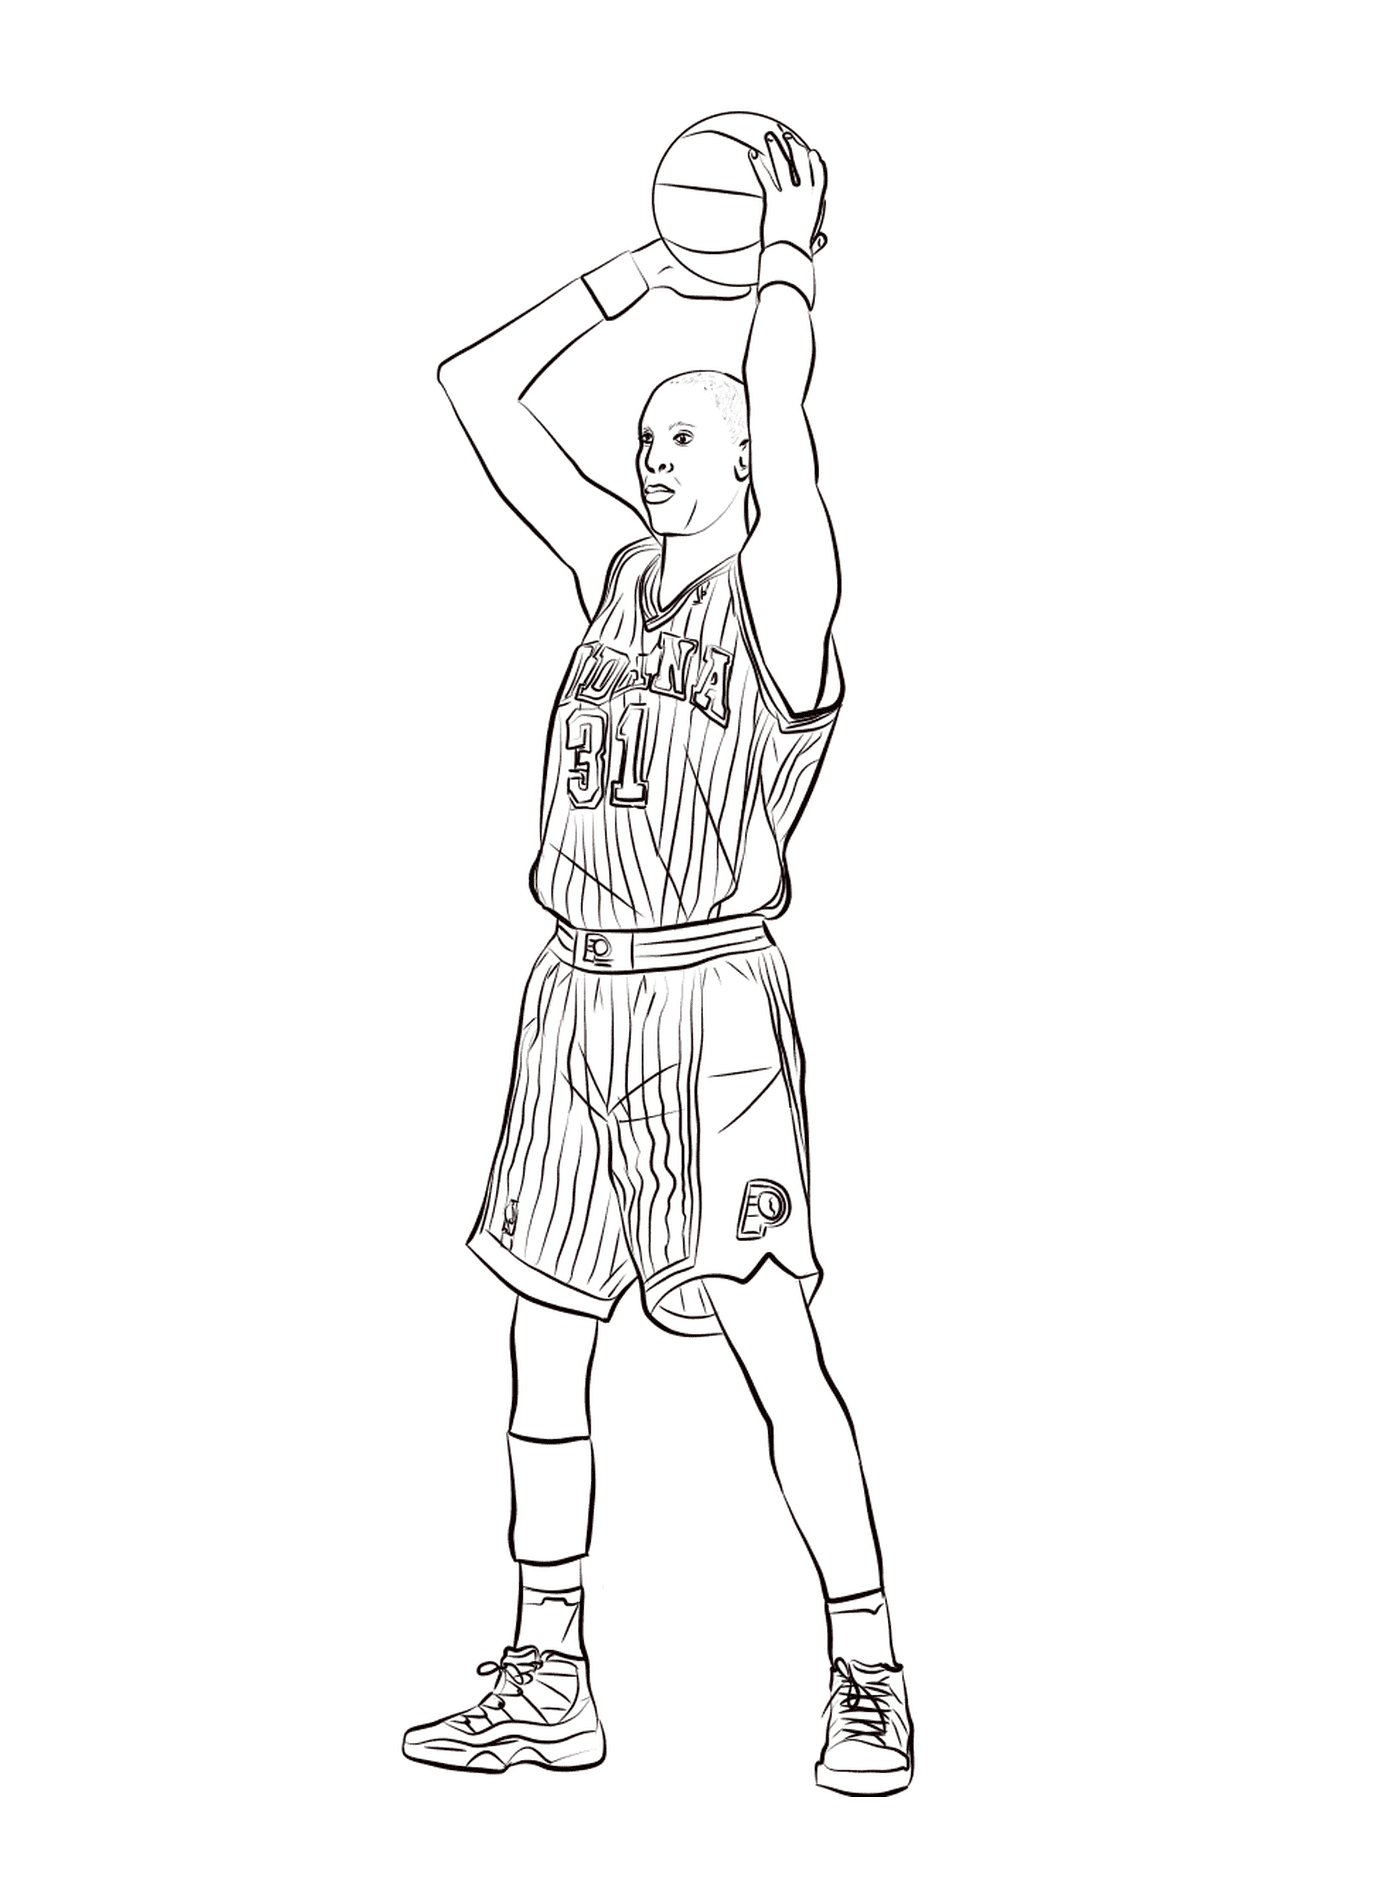   Reggie Miller tient un ballon de basketball 